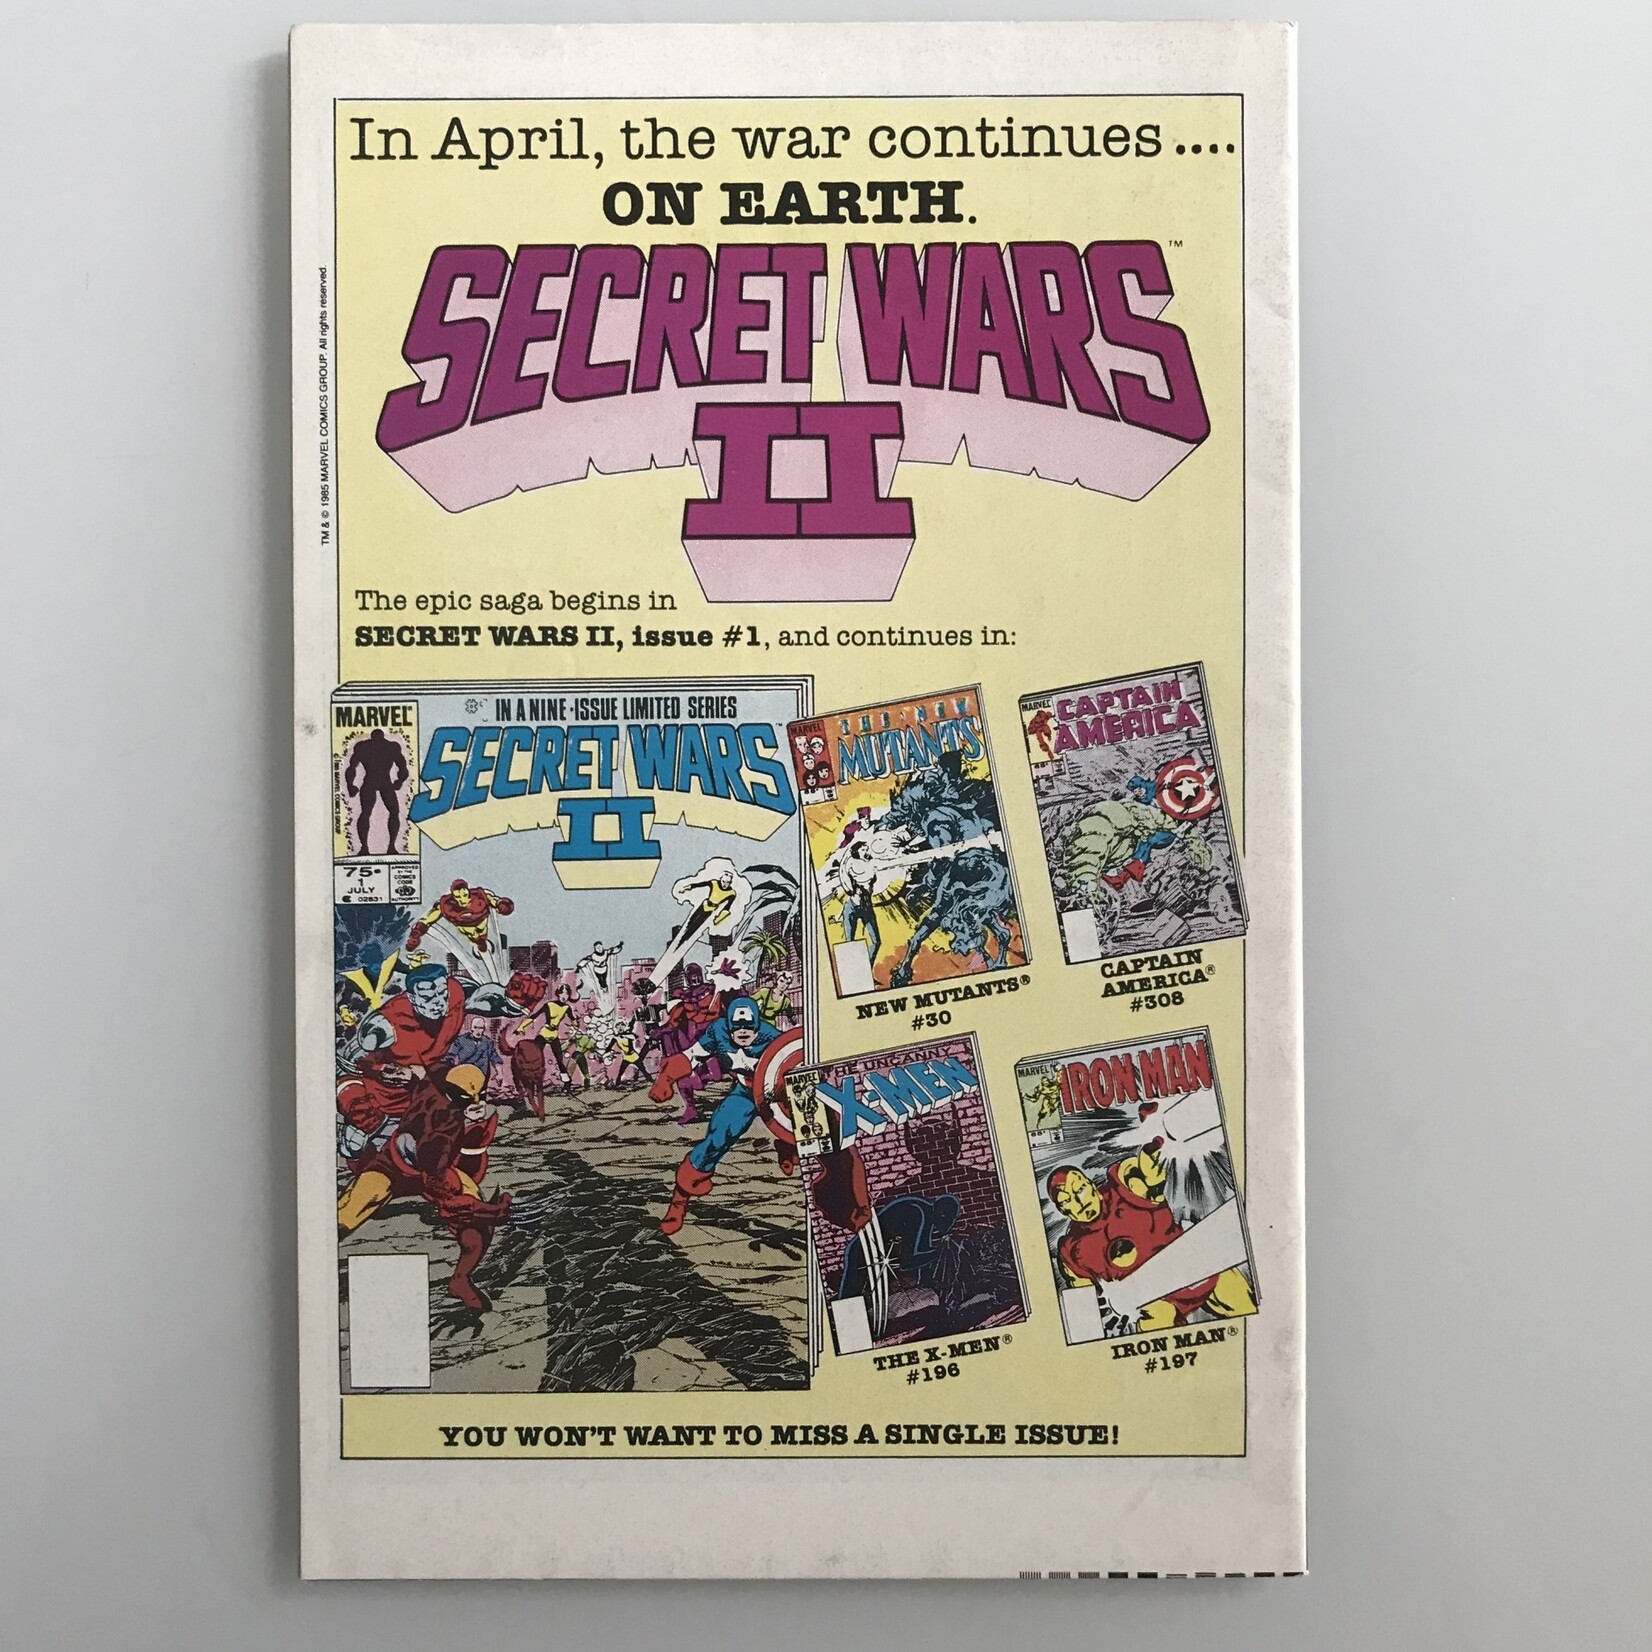 2010 Movie Adaptation - Vol. 1 #02 May 1985 - Comic Book